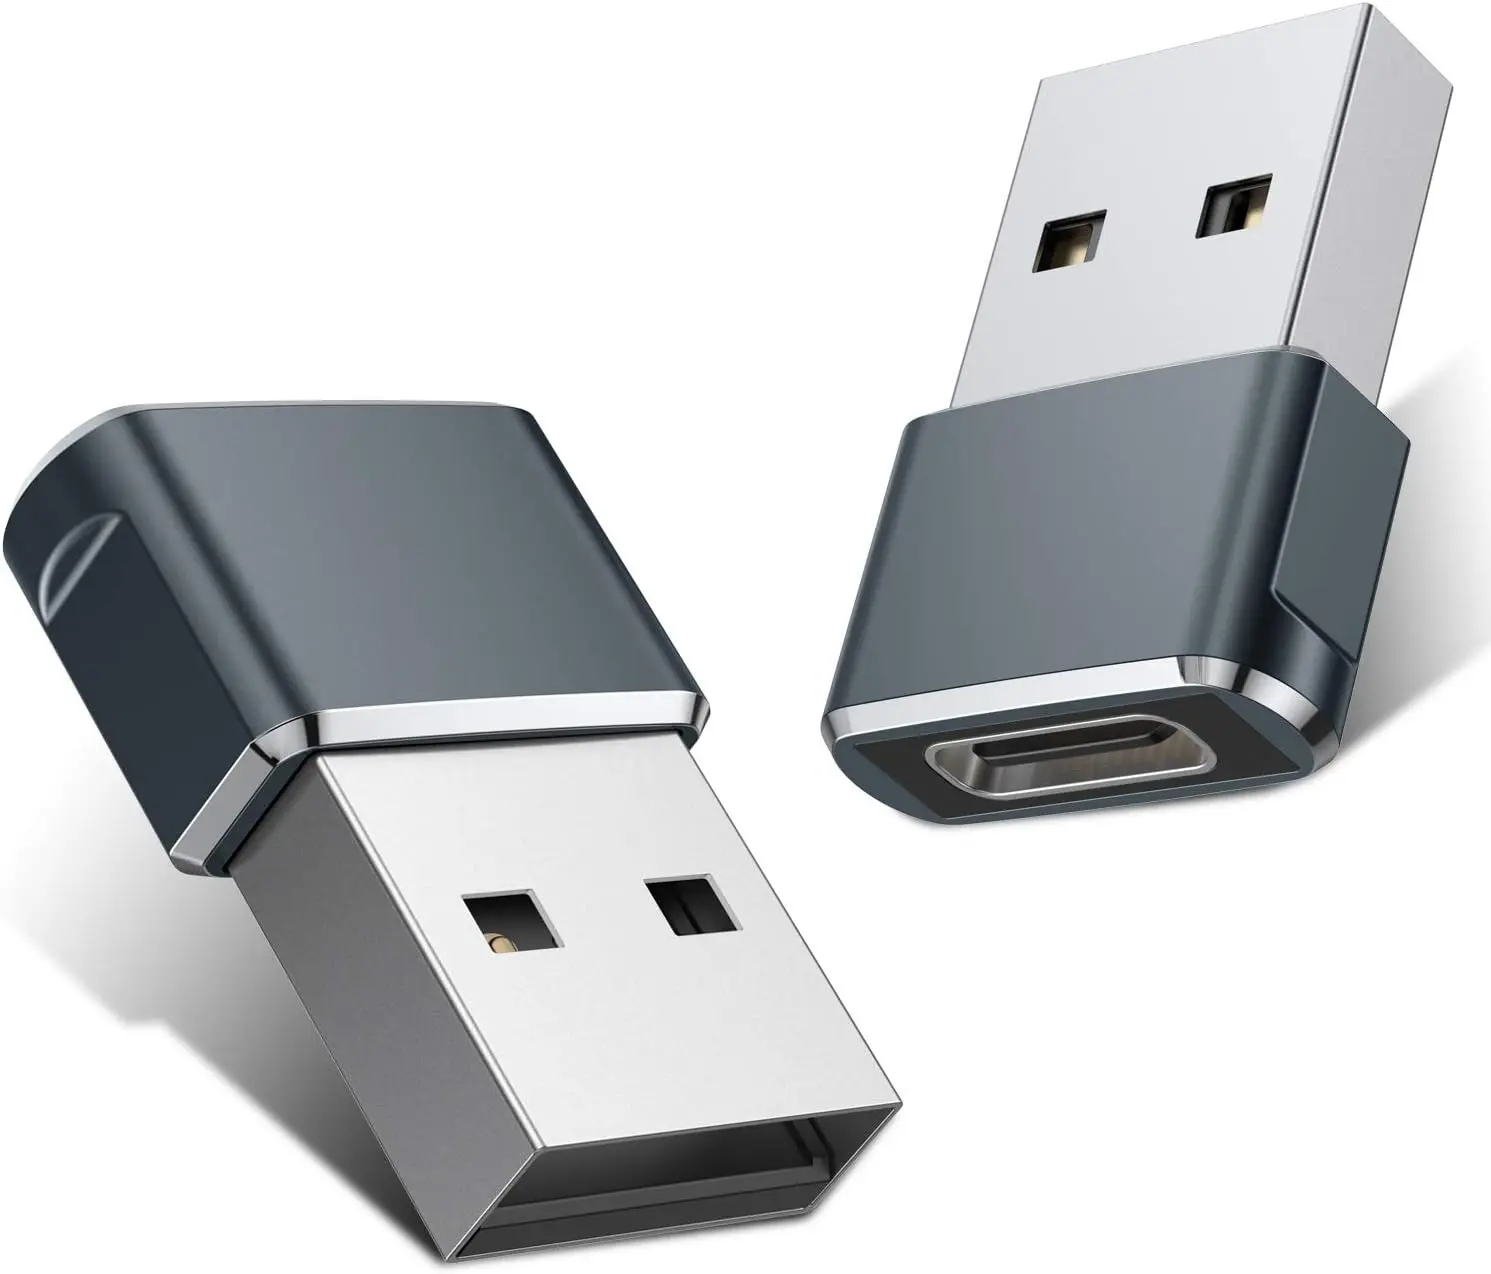 Adattatore USB A USB C USB-C femmina A un maschio caricatore OTG tipo C convertitore per smartwatch telefoni tablet e altro